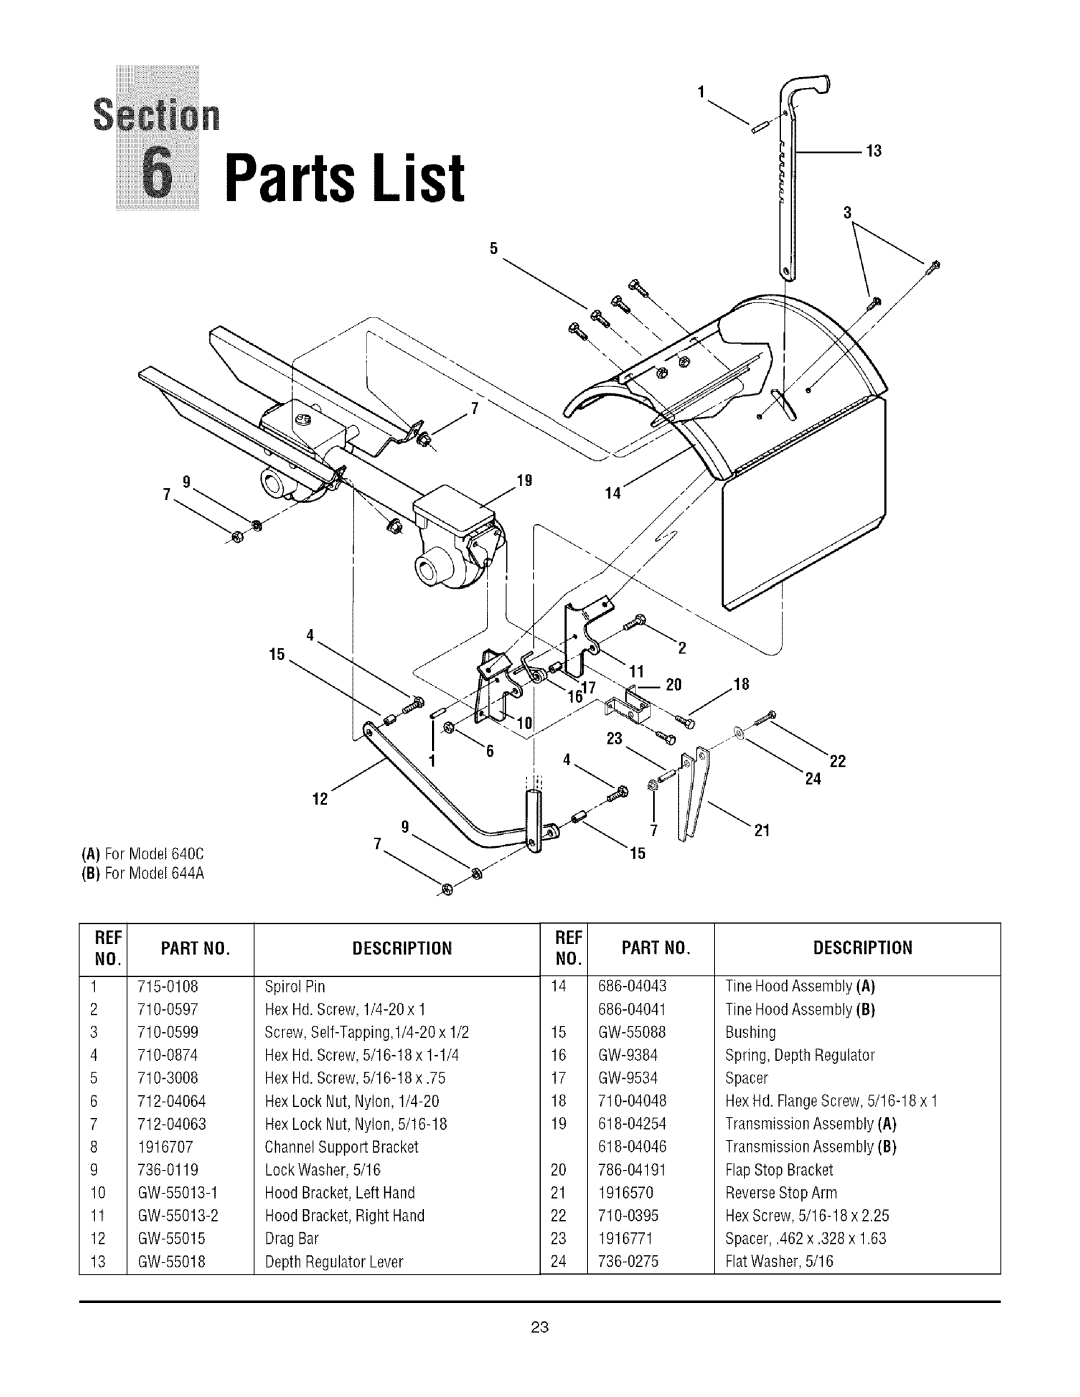 Troy-Bilt 640C, 644A manual PartsList 